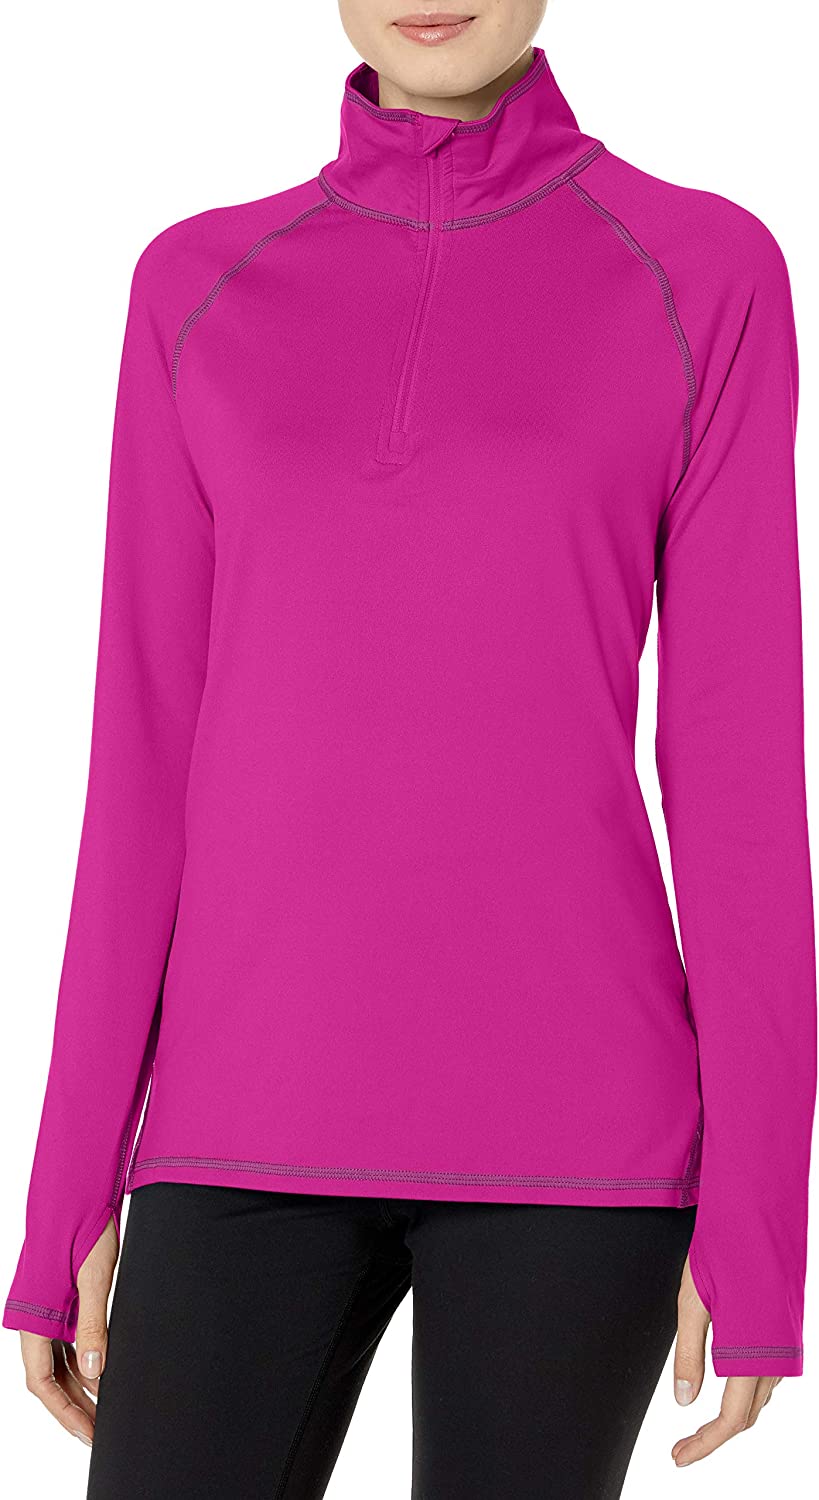 Hanes Sport Women's Performance Fleece Quarter Zip Pullover | eBay